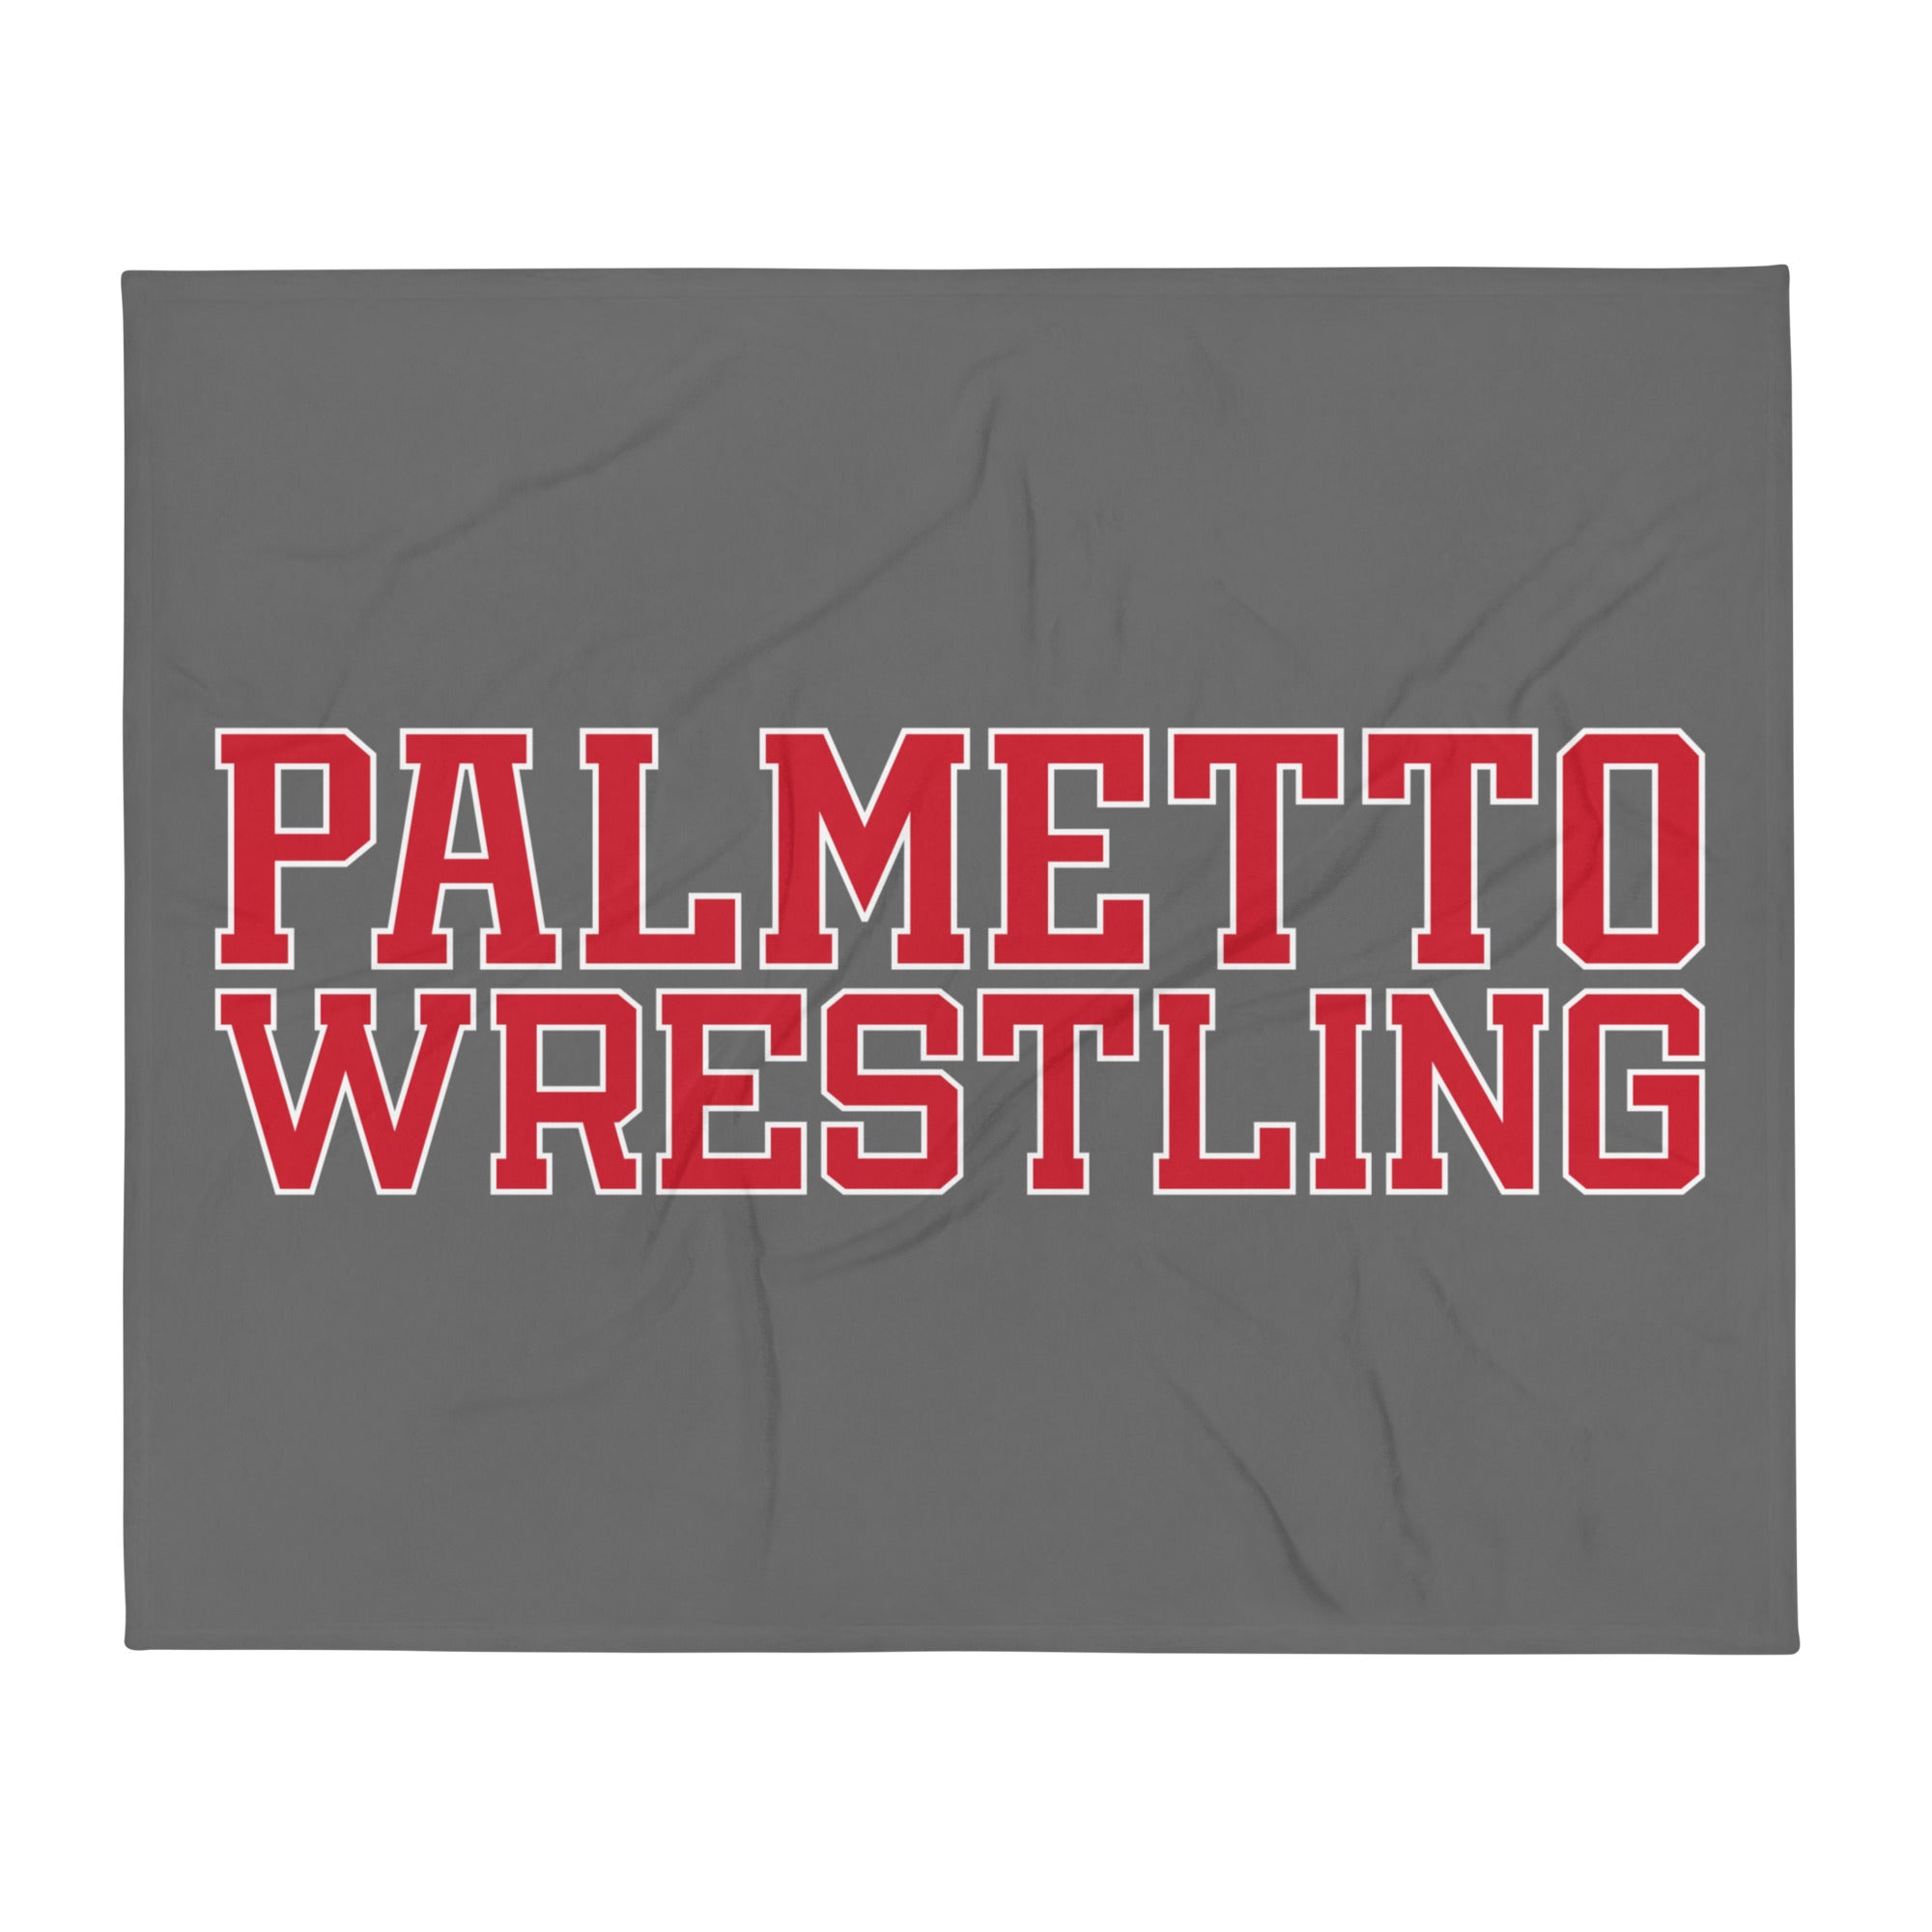 Palmetto Wrestling  Stripes Throw Blanket 50 x 60